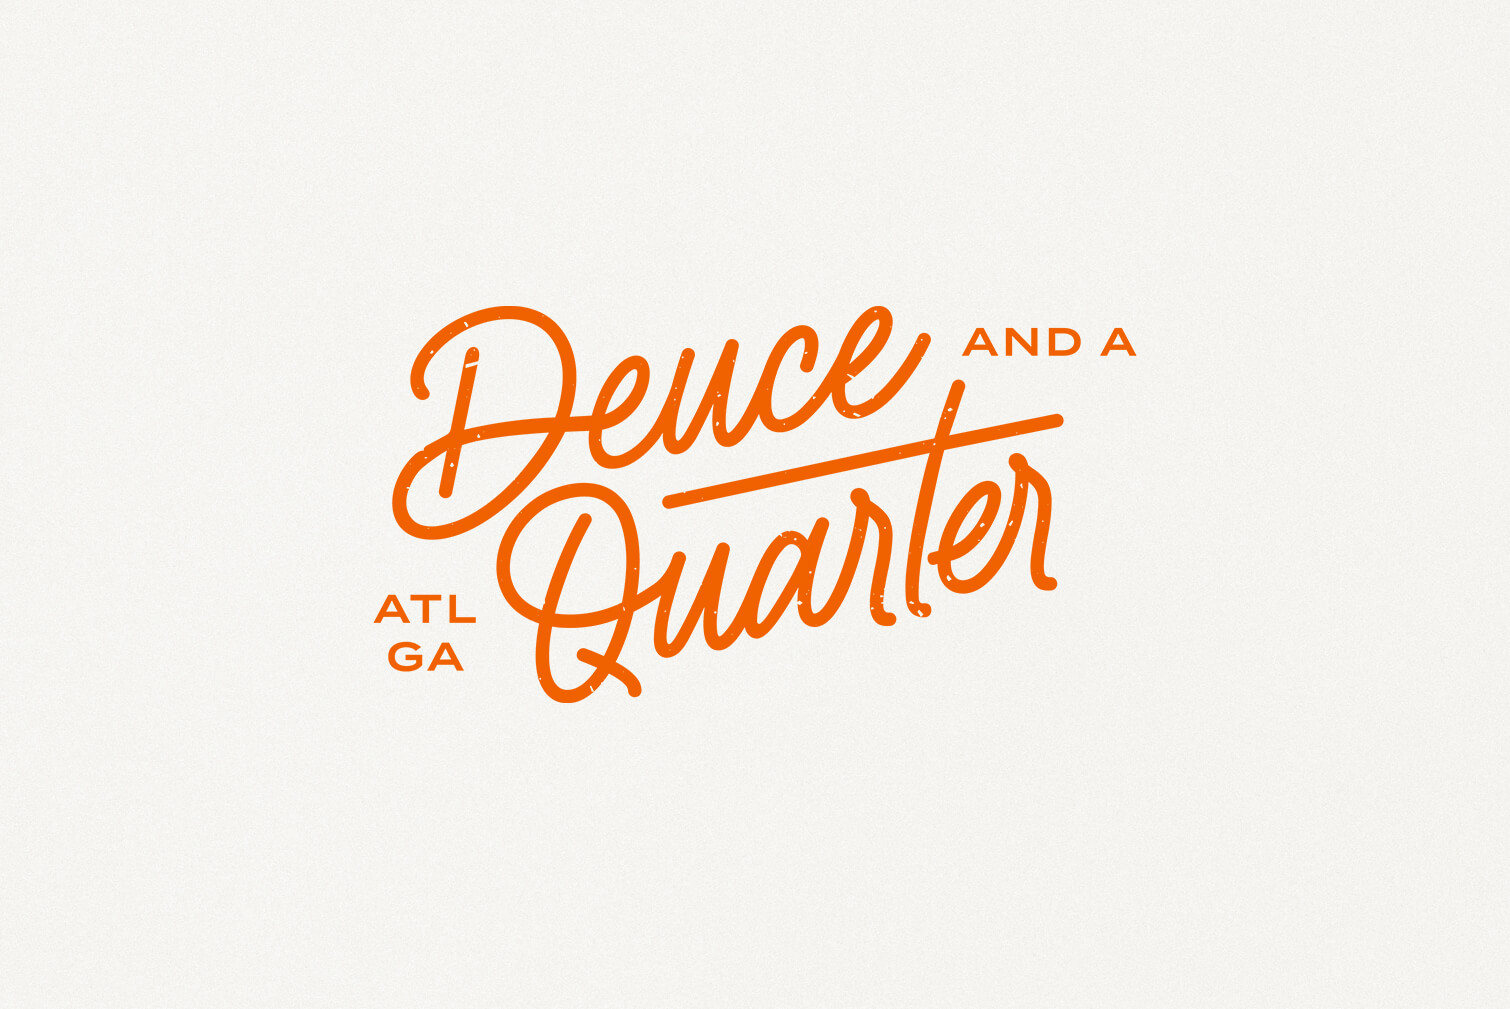 deuce and a quarter logo